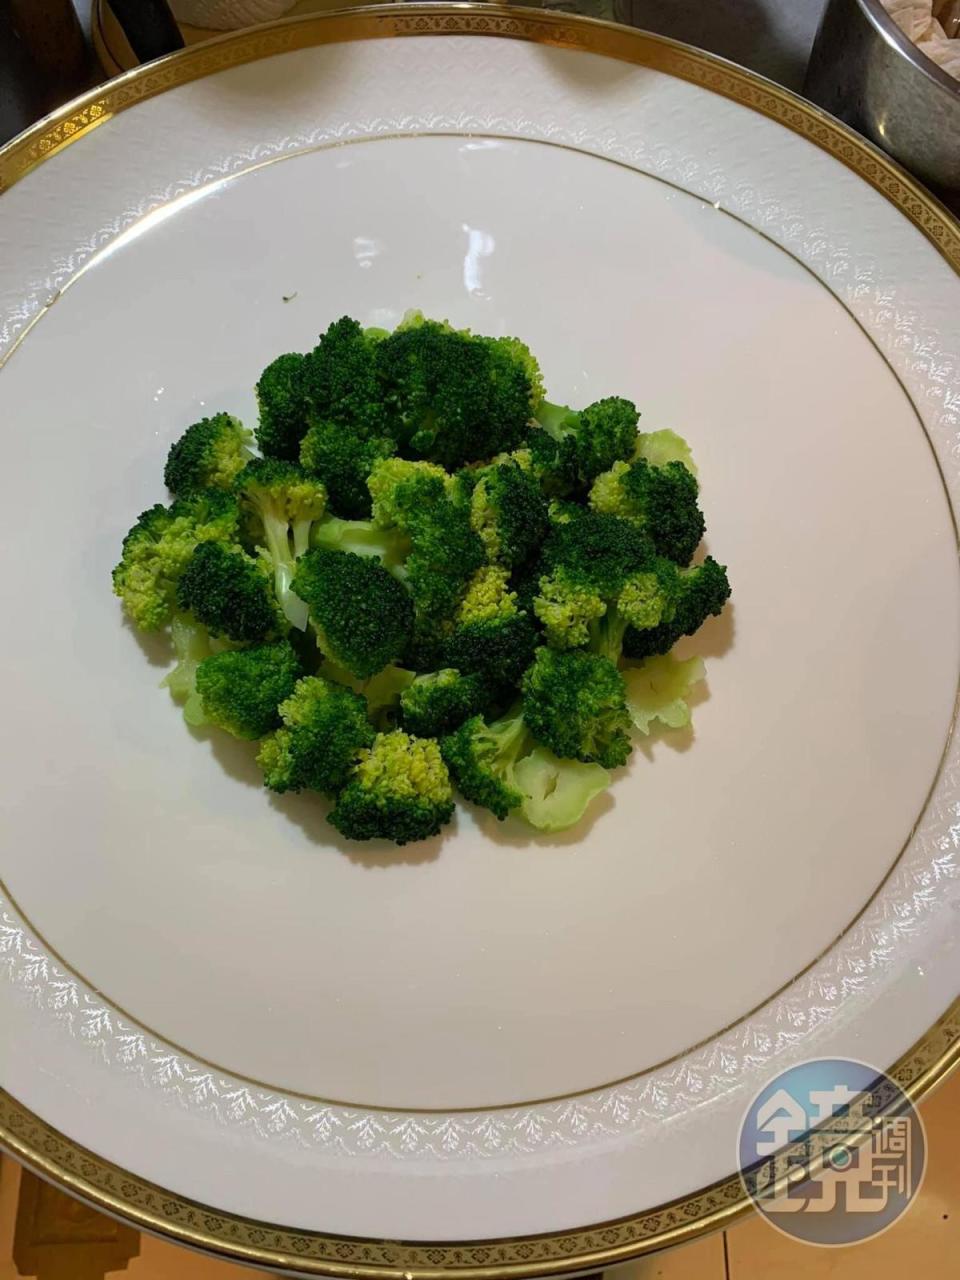 綠花椰菜先燙熟攞盤。